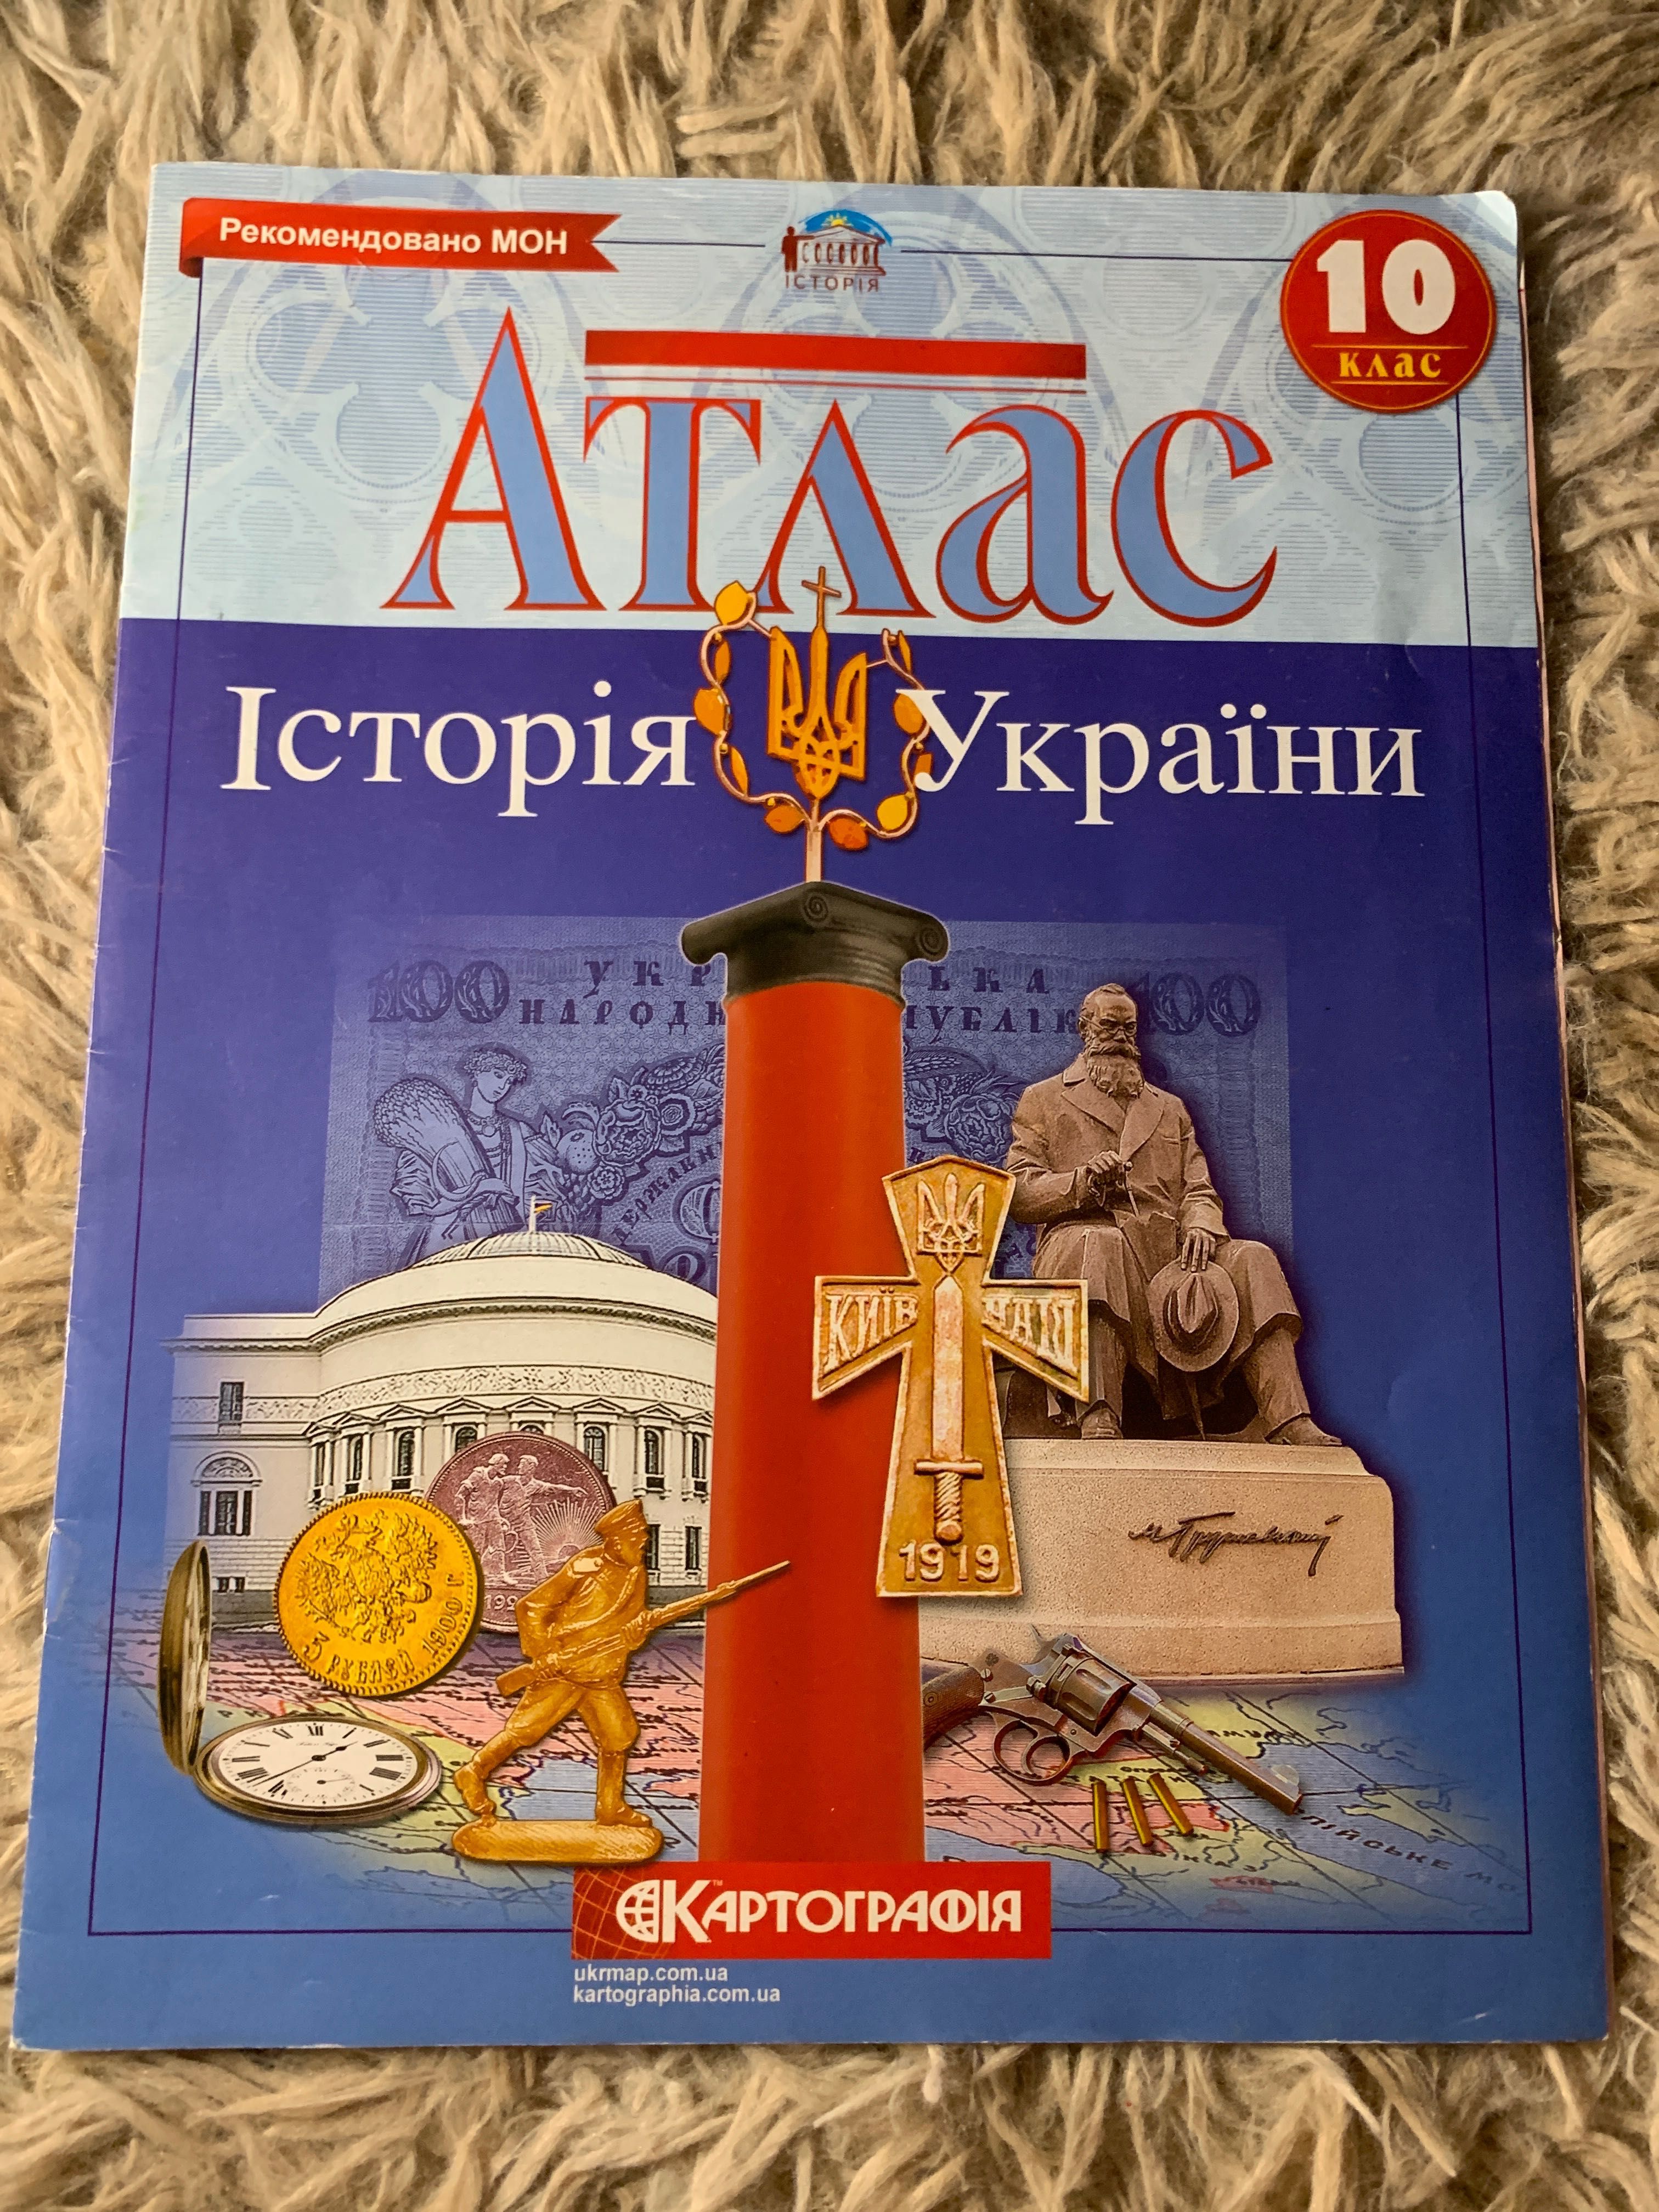 Атлас з історії України (недорого)